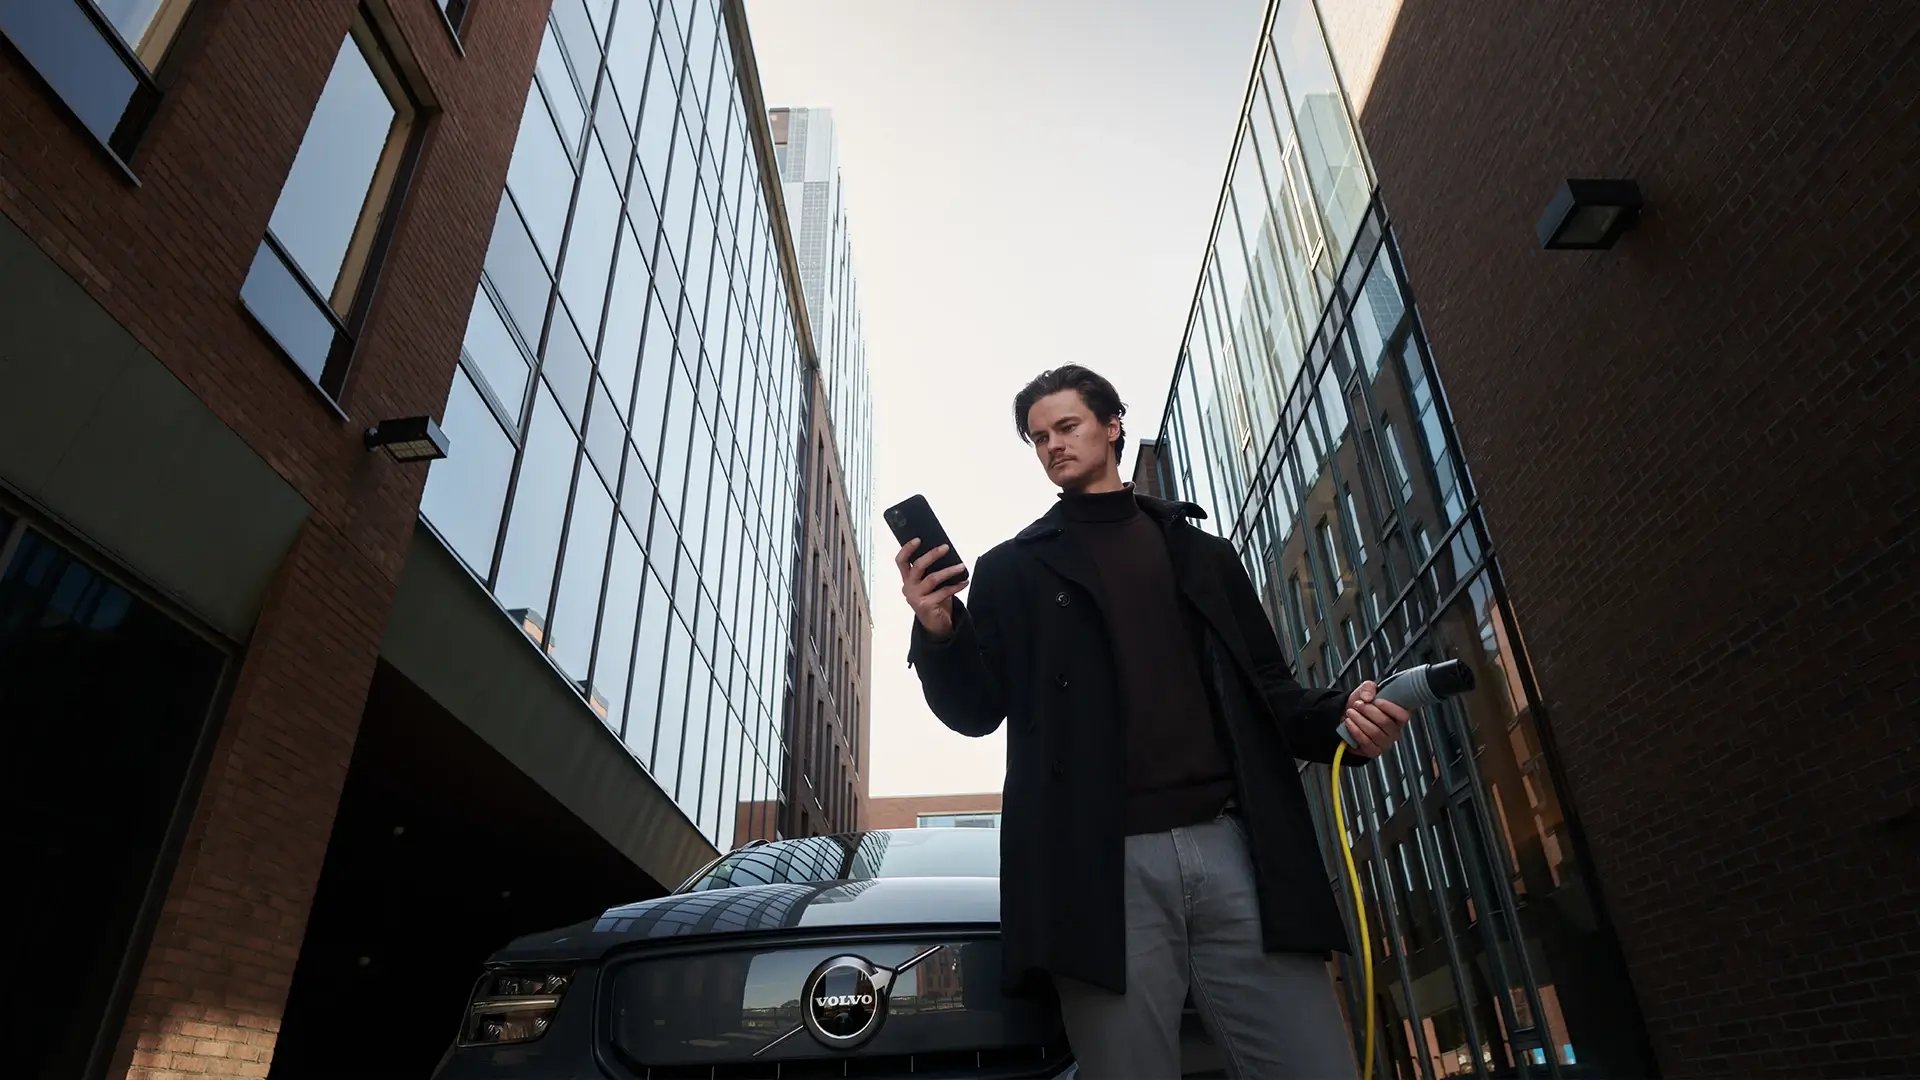 Mann startet Ladevorgang für sein E-Autos über eine App in seinem Smartphone und hält dabei gelbes Ladekabel in der Hand